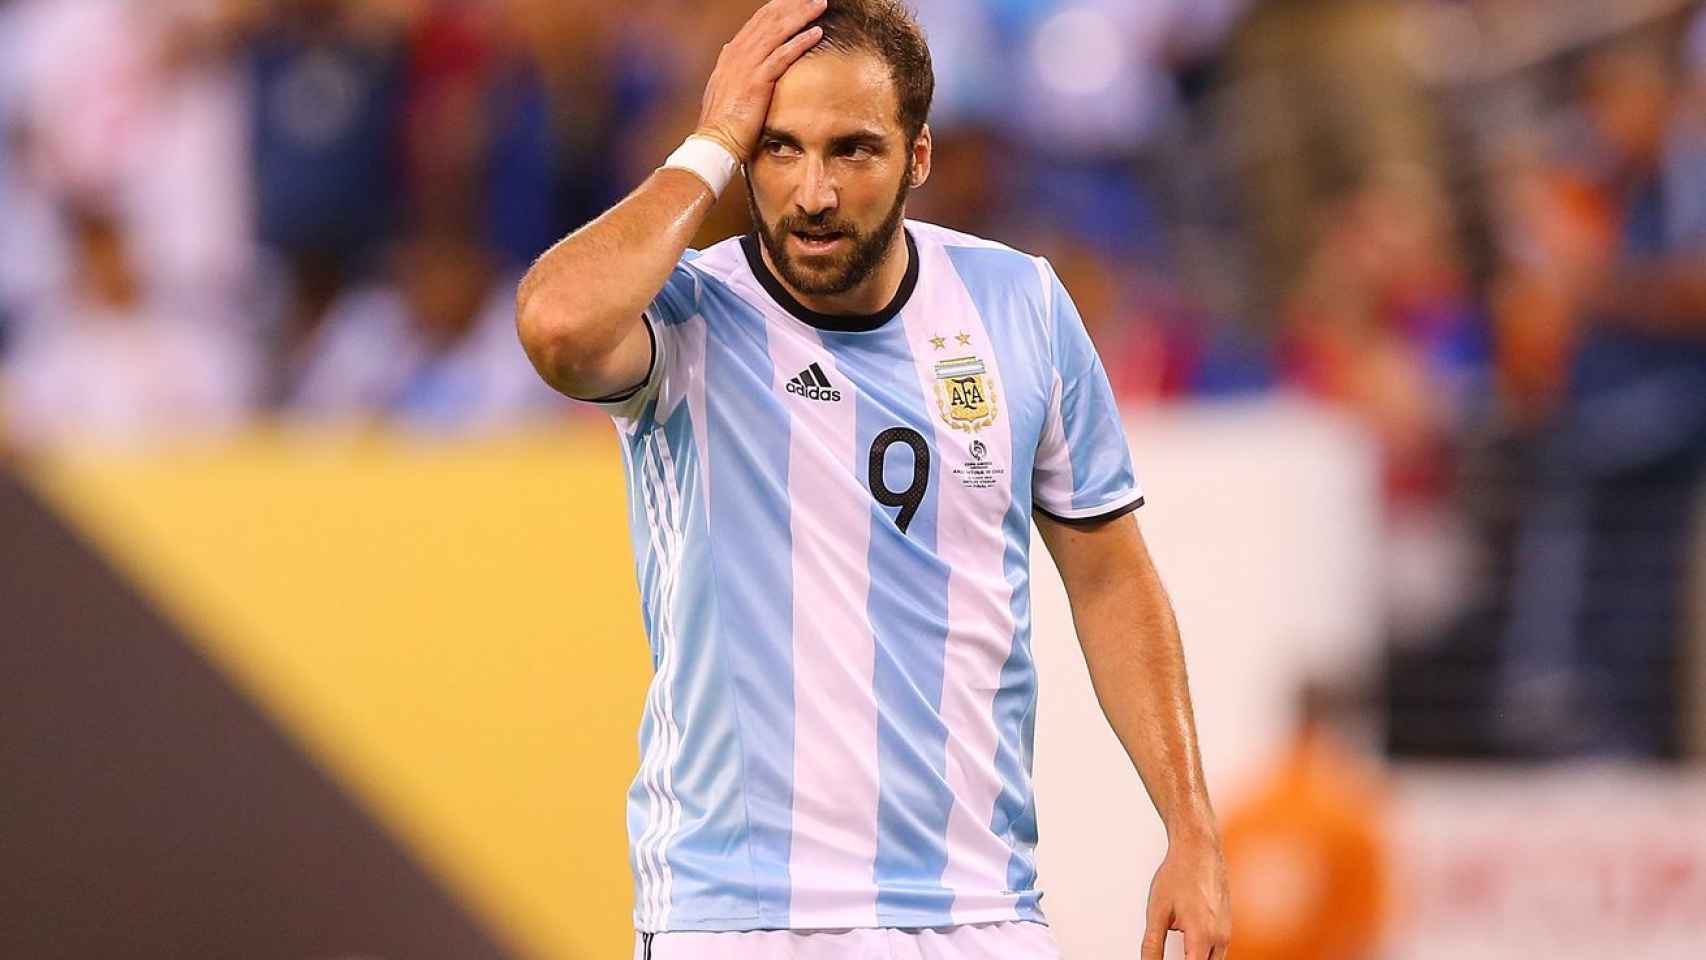 Higuaín con Argentina: todavía se le recuerdan sus fallos en 2014.